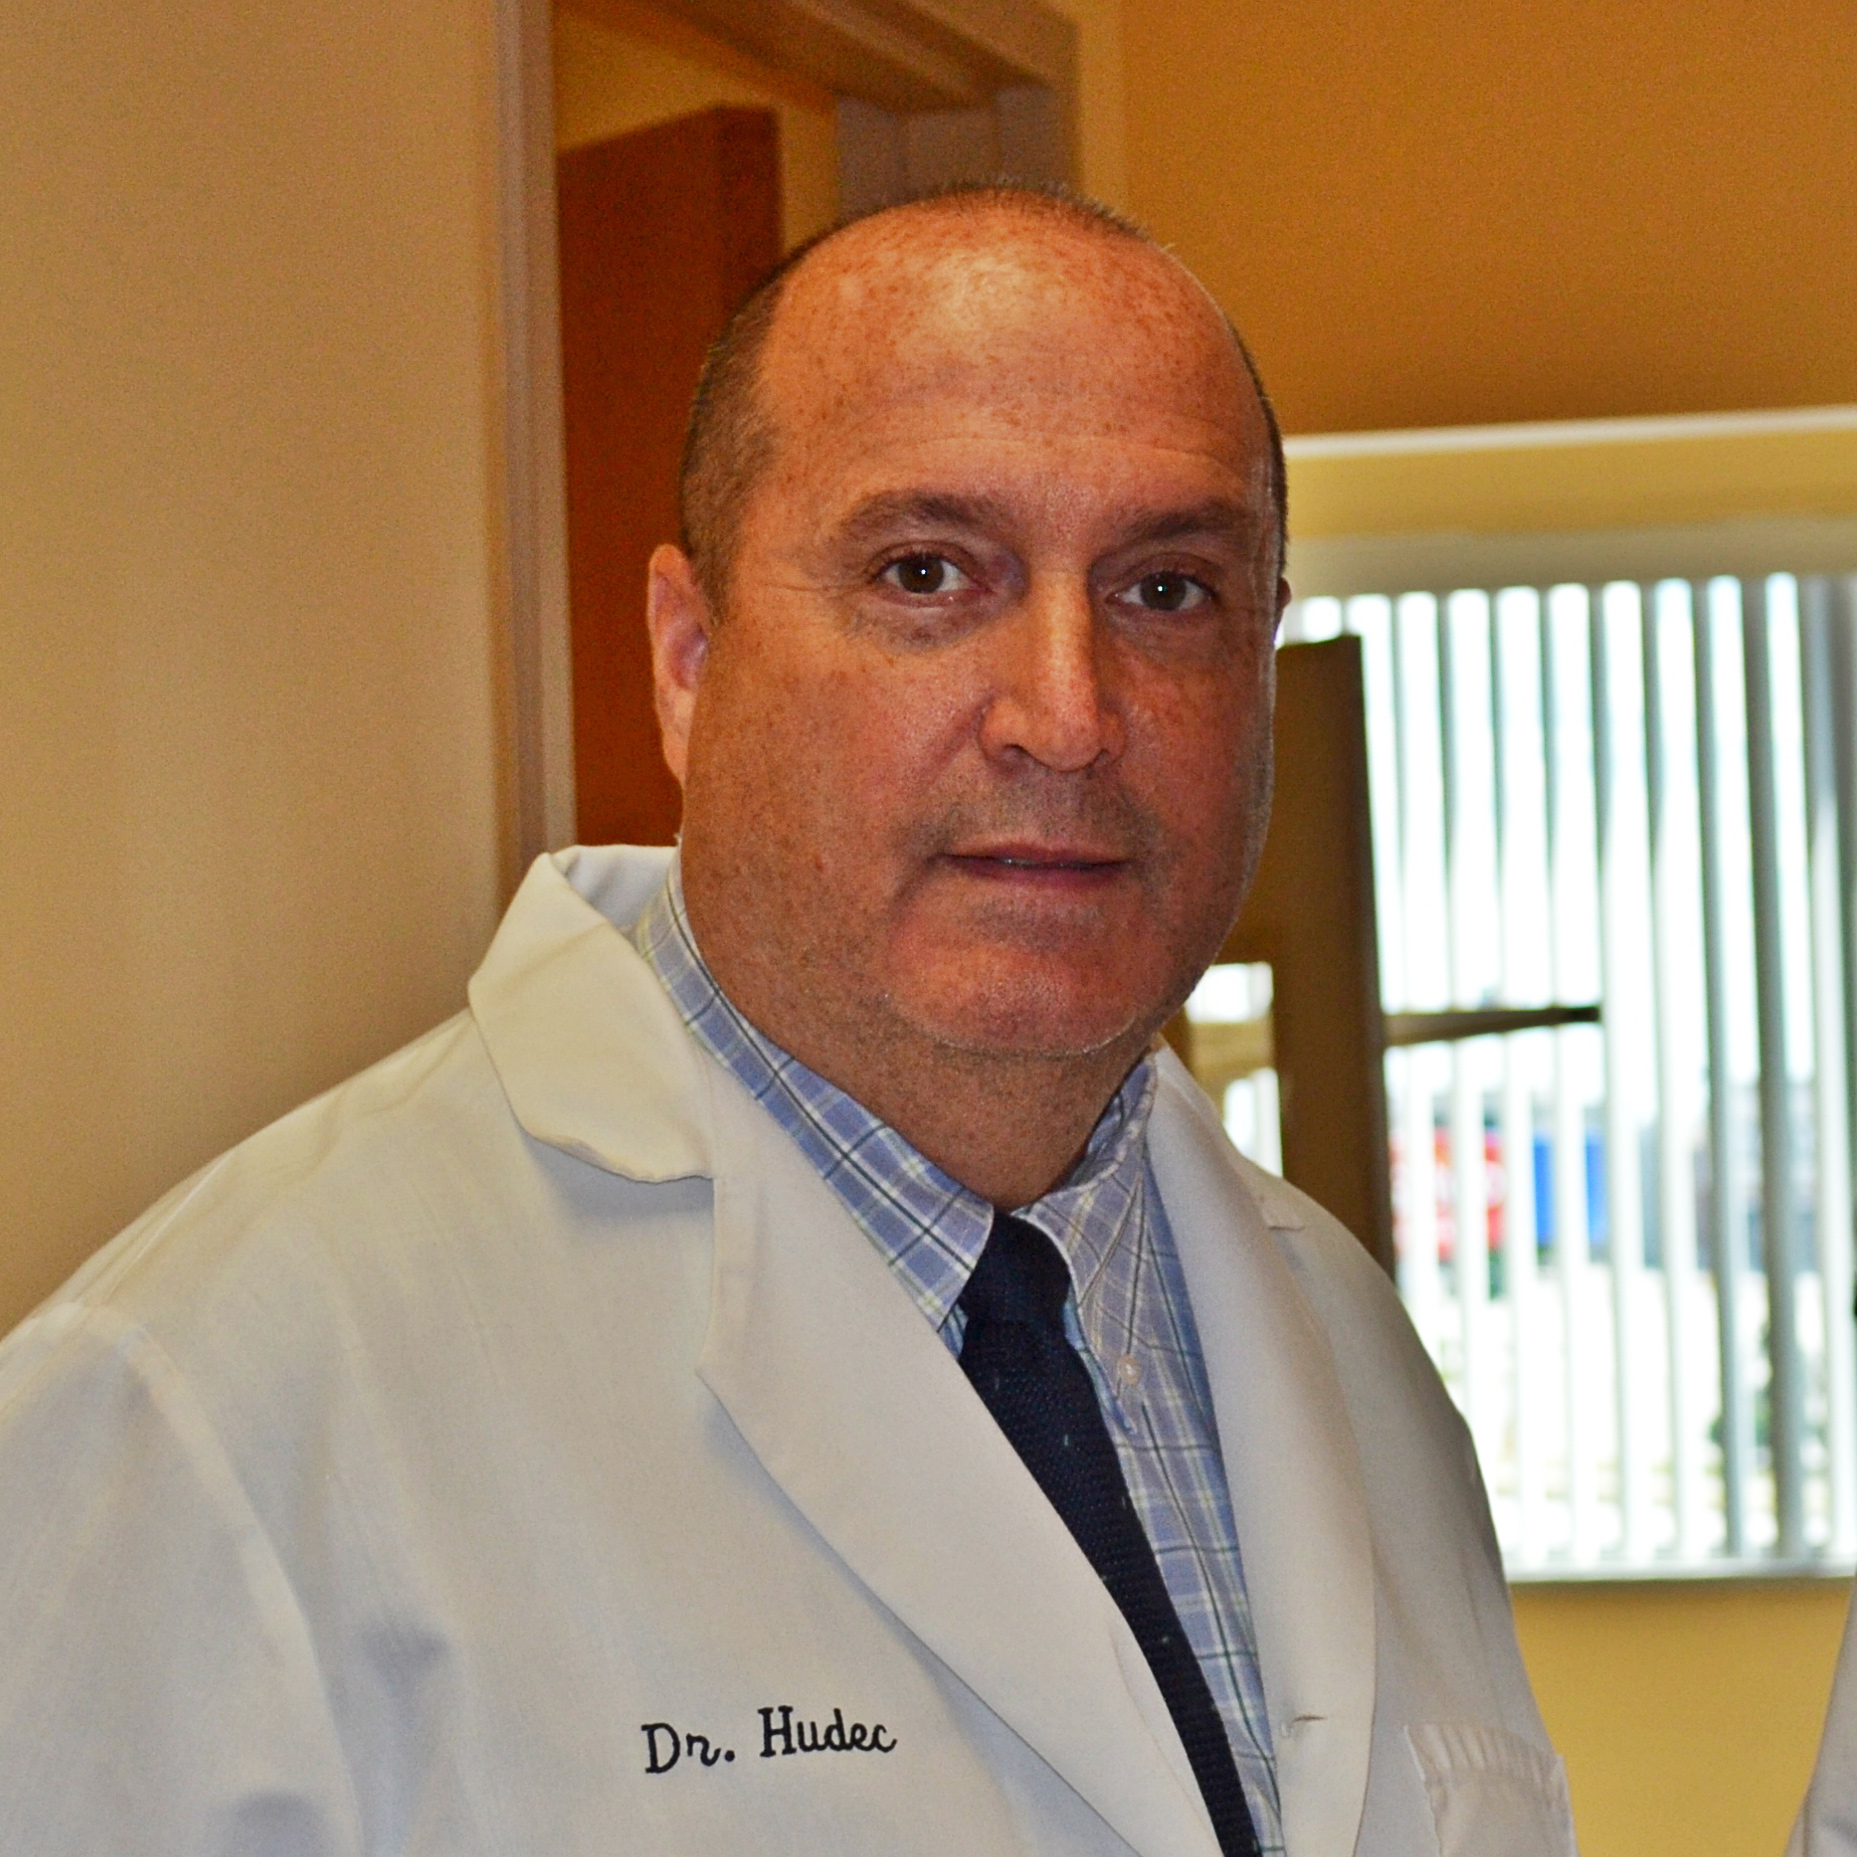 Dr. David Hudec, Sr.